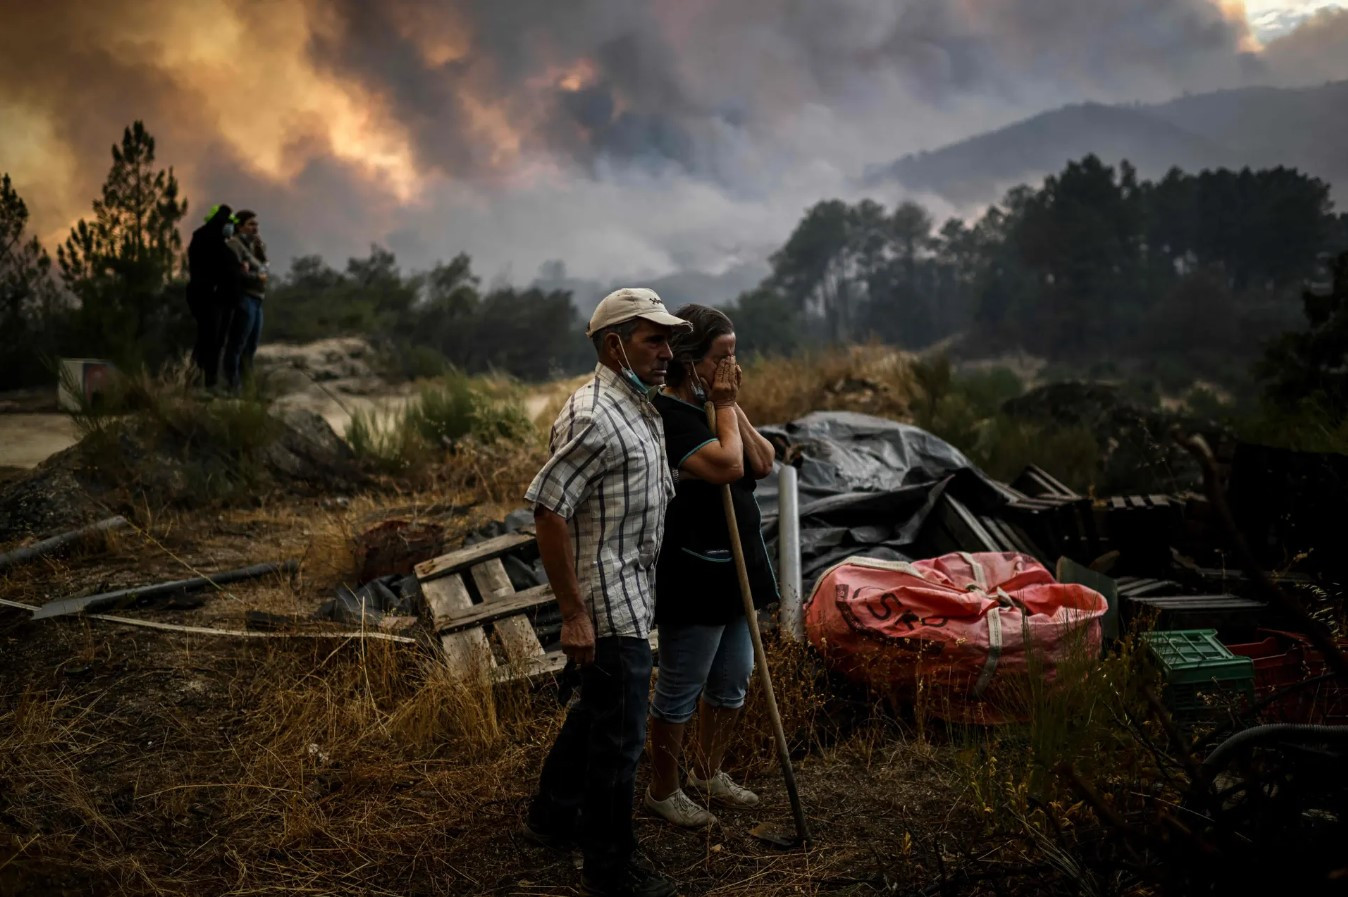 Cư dân địa phương chứng kiến ​​trận cháy rừng ở Orjais. Một trận cháy rừng lớn đã bùng phát trong một tuần tại một công viên tự nhiên ở miền Trung Bồ Đào Nha, thiêu rụi khoảng 15.000 ha rừng sau khi ngọn lửa bị gió lớn quật mạnh. Ảnh: Patricia de Melo Moreira / AFP / Getty Images.